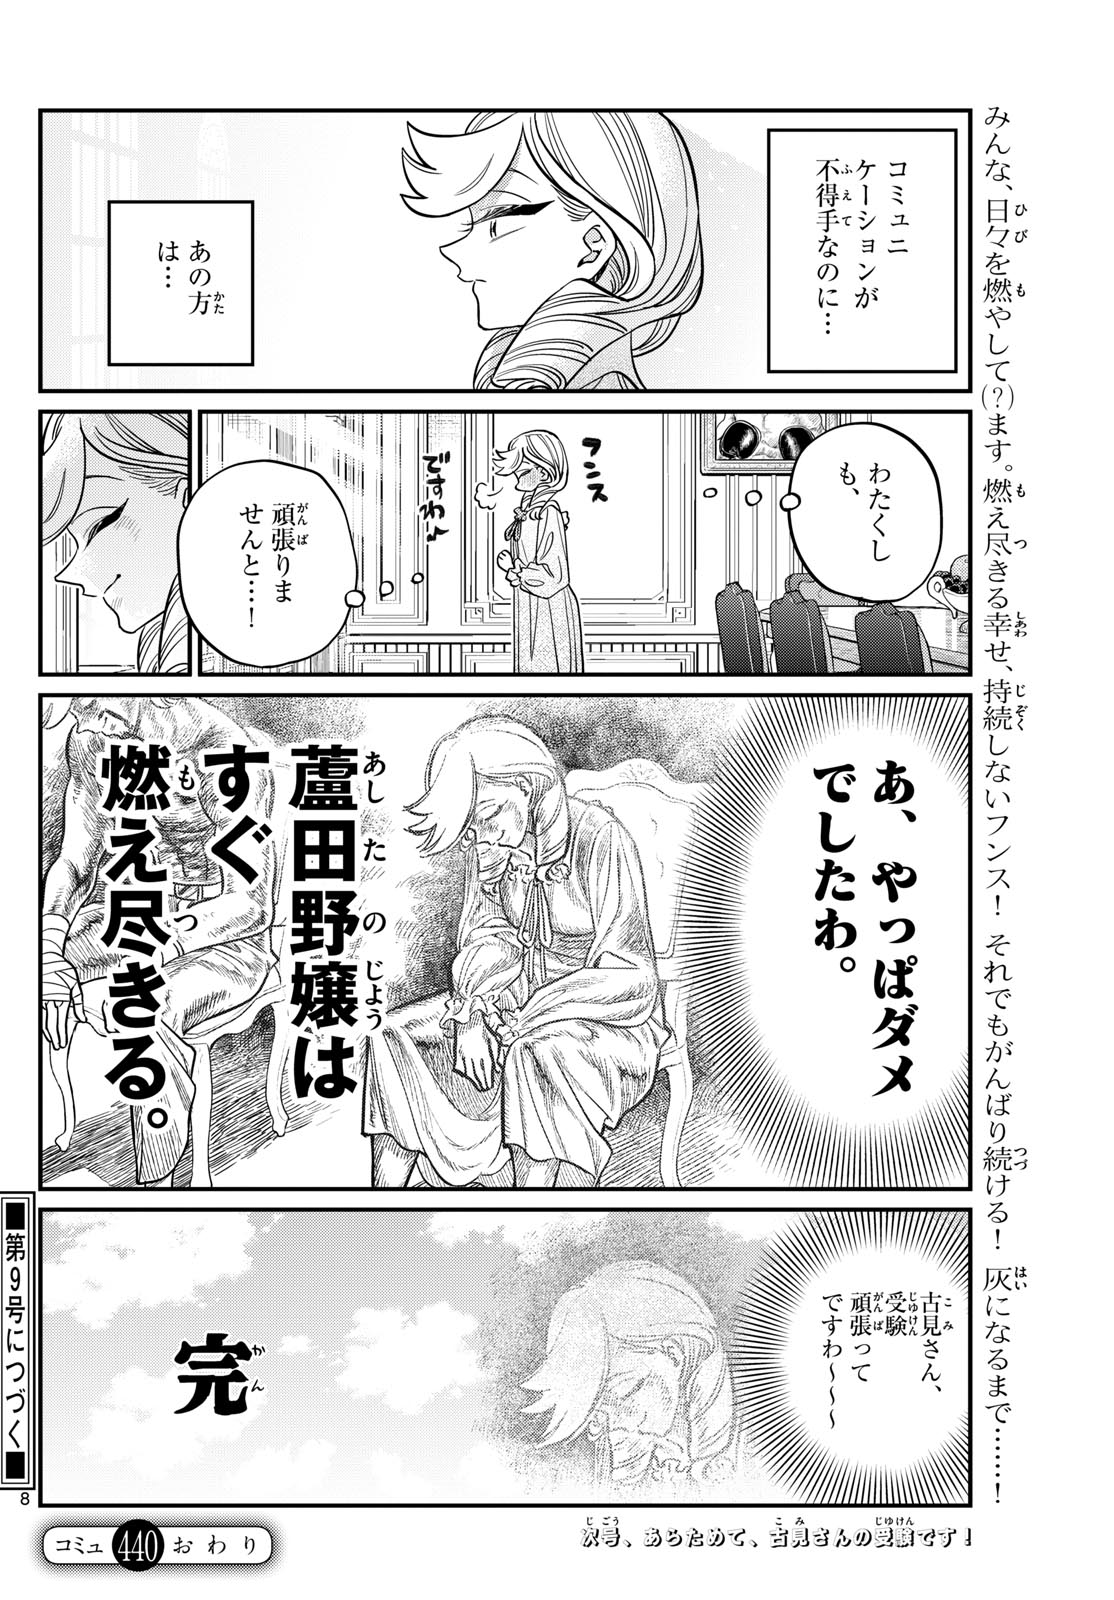 Komi-san wa Komyushou Desu - Chapter 440 - Page 8